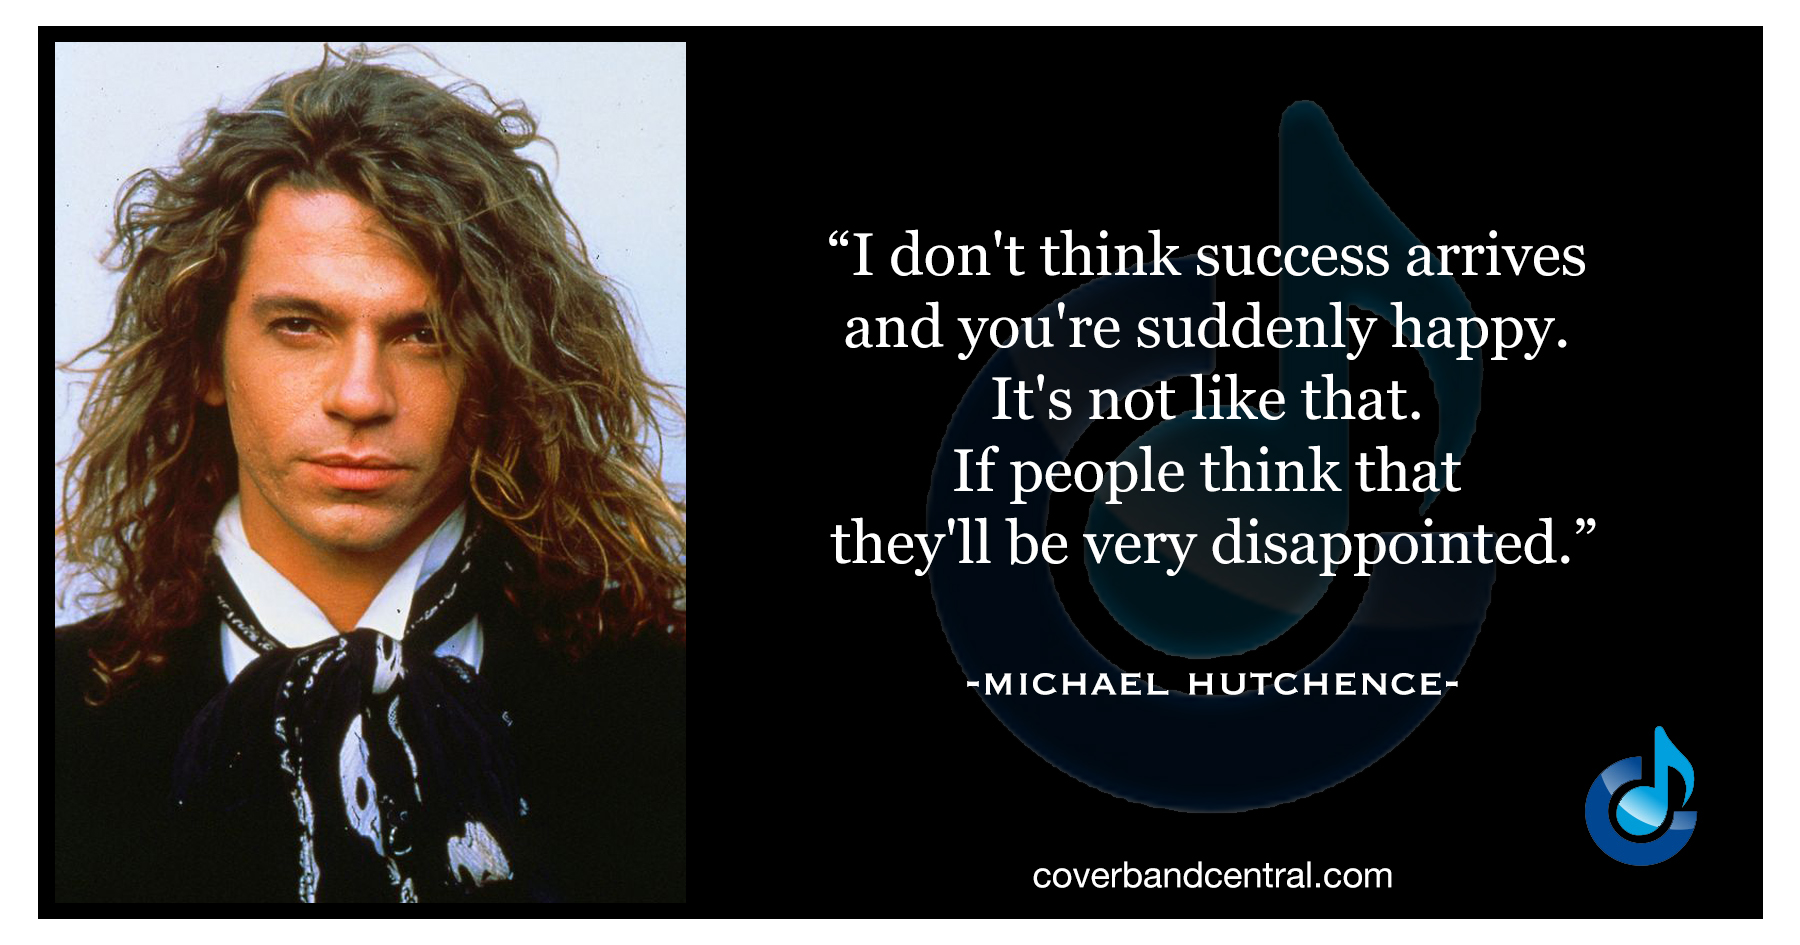 Michael Hutchence quote